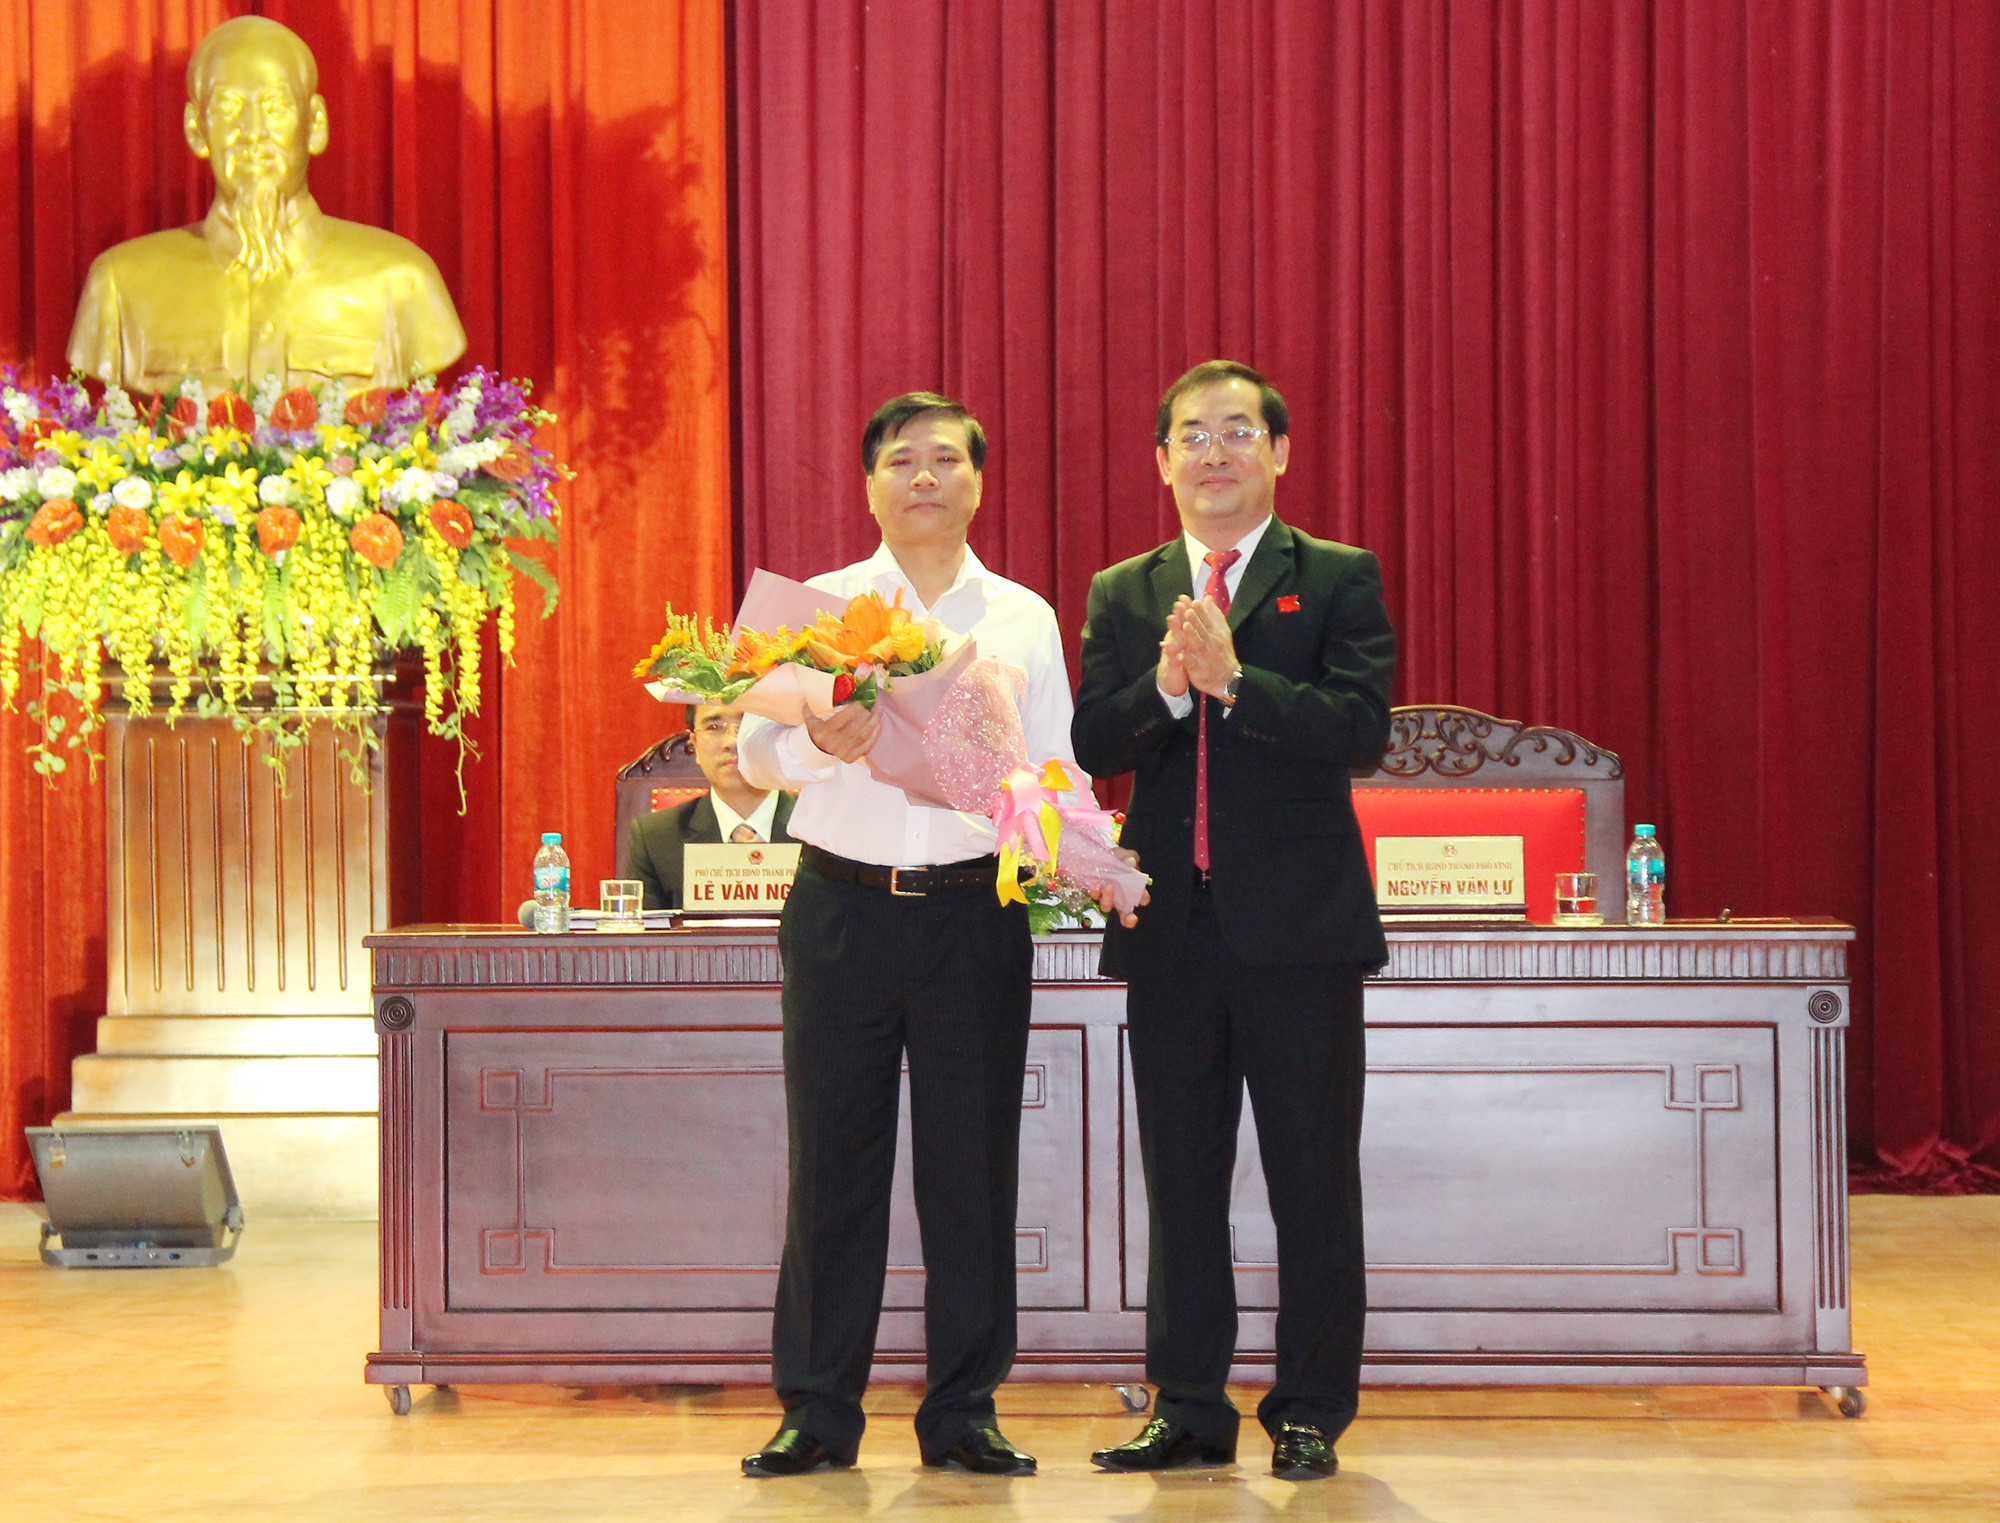 Chủ tịch HĐND thành phố Nguyễn Văn Lư tặng hoa chúc mừng ông Trần Ngọc Tú được bầu giữ chức Chủ tịch UBND thành phố, nhiệm kỳ 2016 - 2021